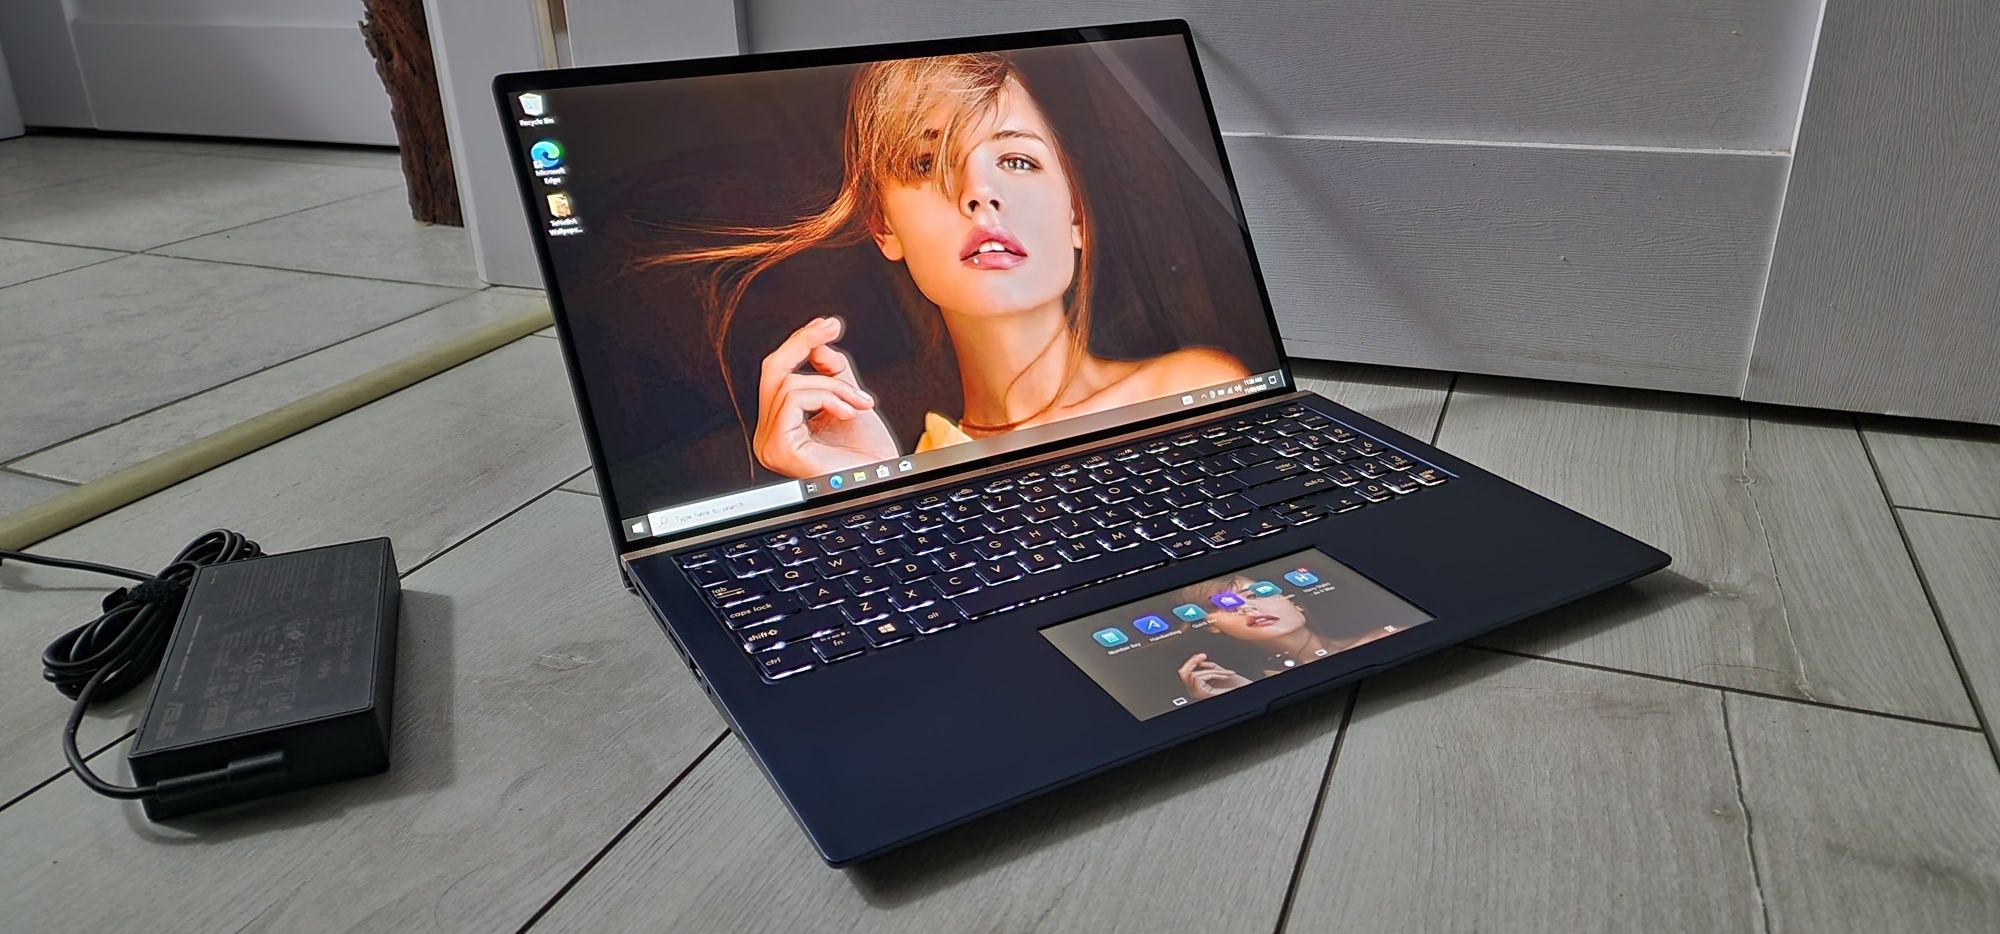 Laptop ZenBook Asus UX534F_4K 15.6"_I5 10210U, 512GB, GTX 1650 Max-Q